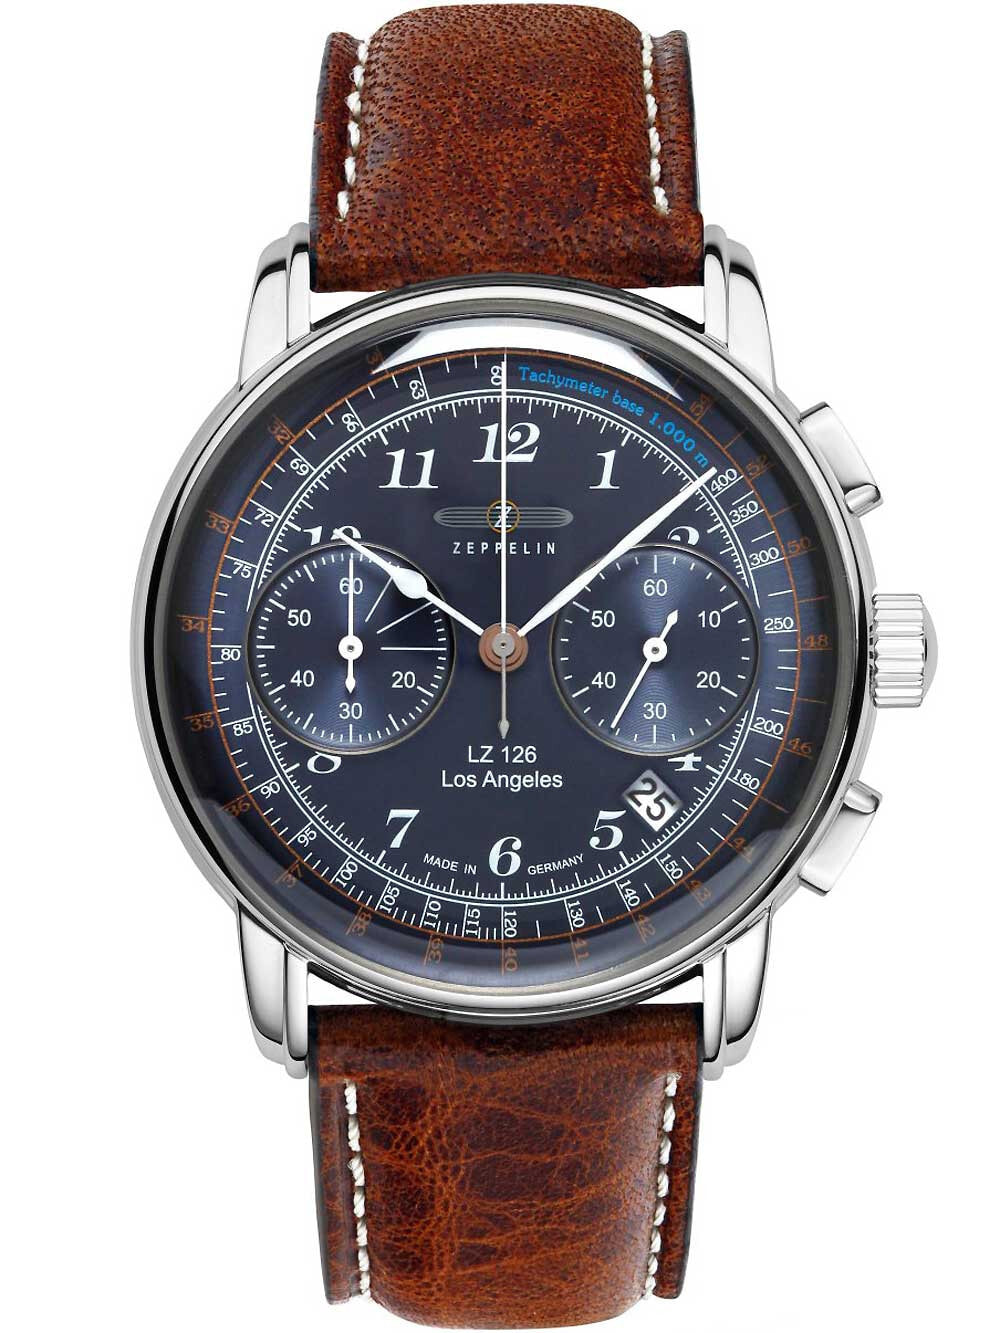 Мужские наручные часы с коричневым кожаным ремешком Zeppelin 7614-3 chrono LZ126 Los Angeles 43mm 5ATM